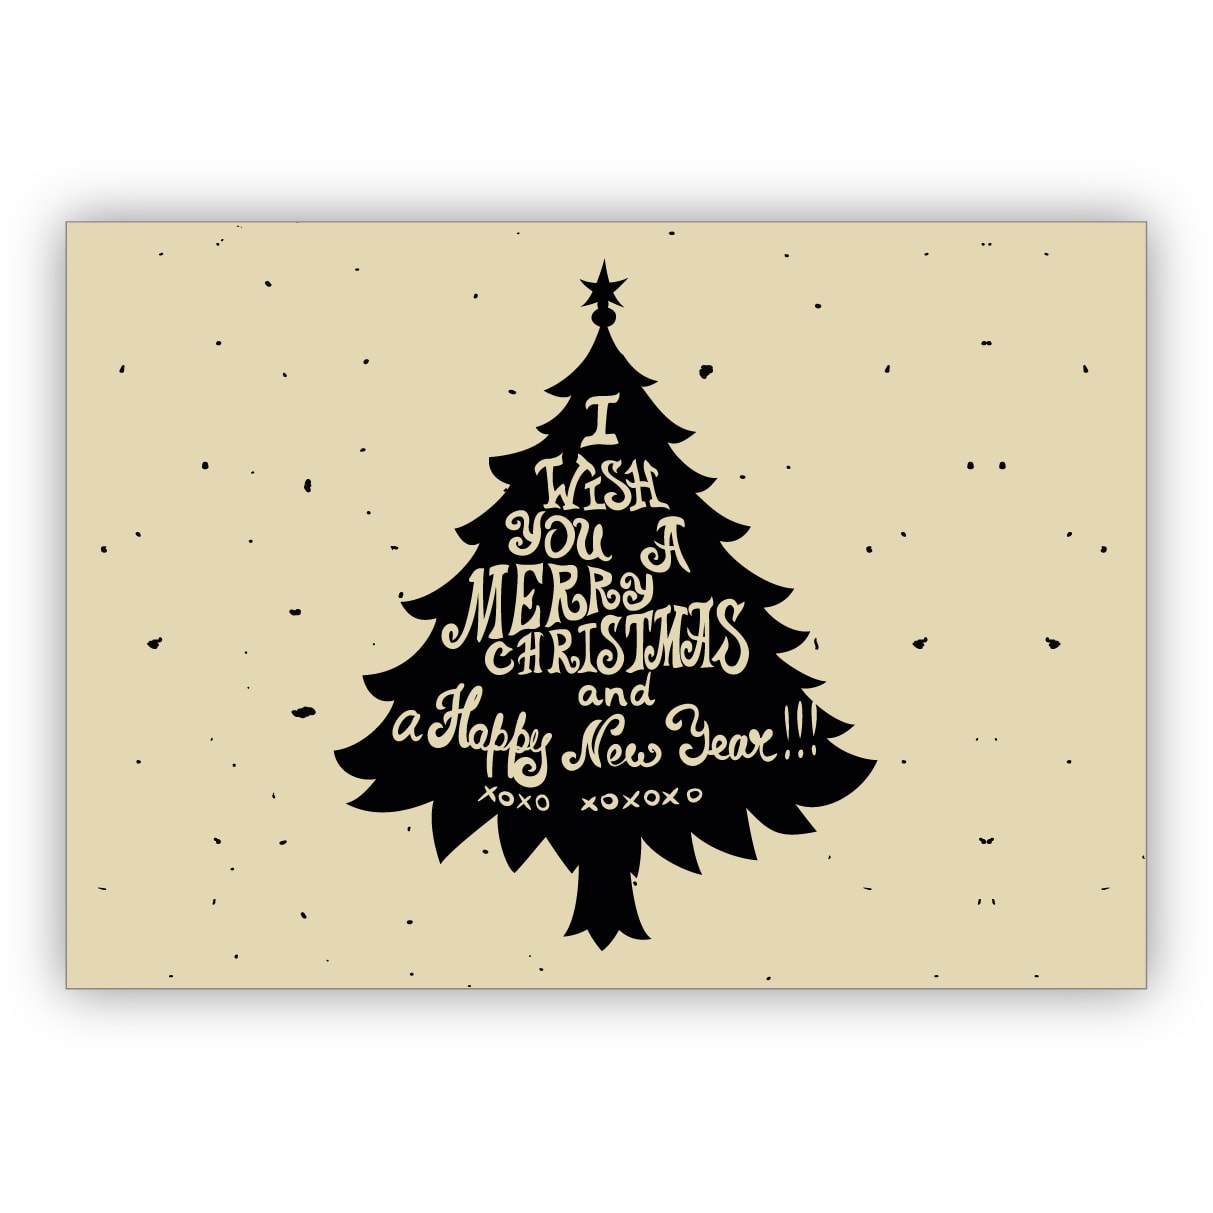 Englische Vintage Retro Weihnachtskarte mit Weihnachtsbaum: I wish you a merry christmas and a happy new year